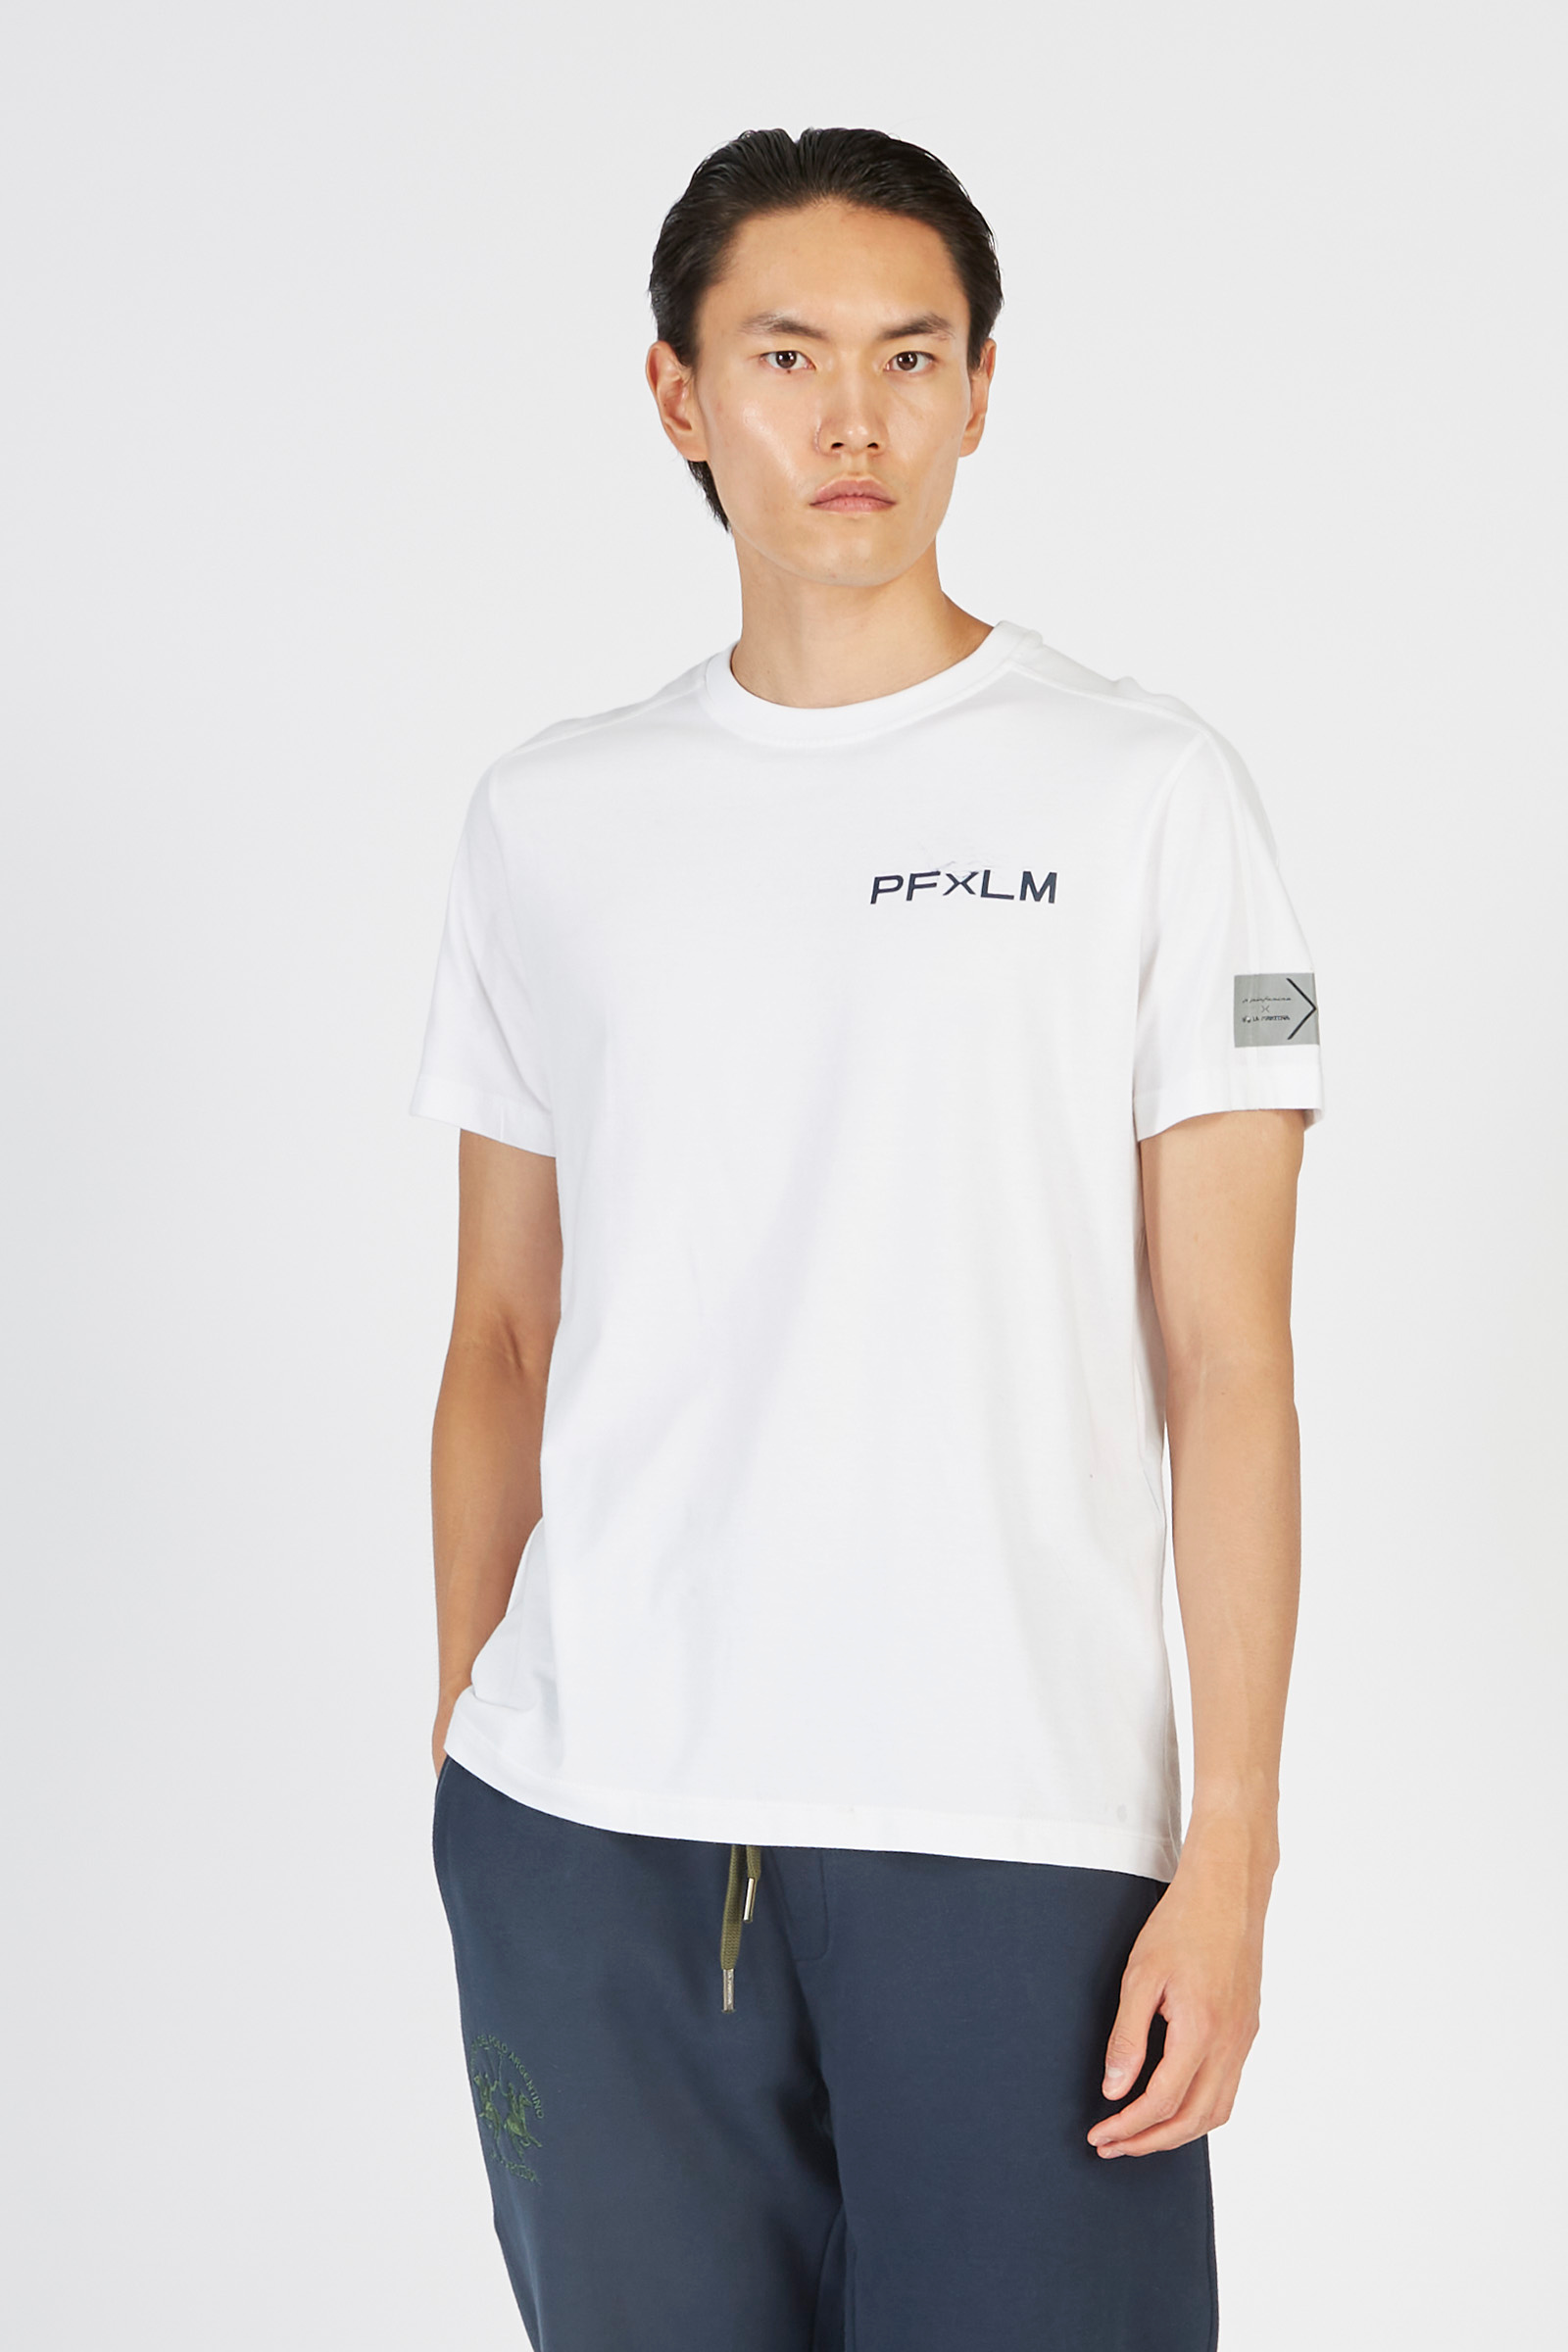 Pininfarina men’s regular fit cotton t-shirt Optic White La Martina ...